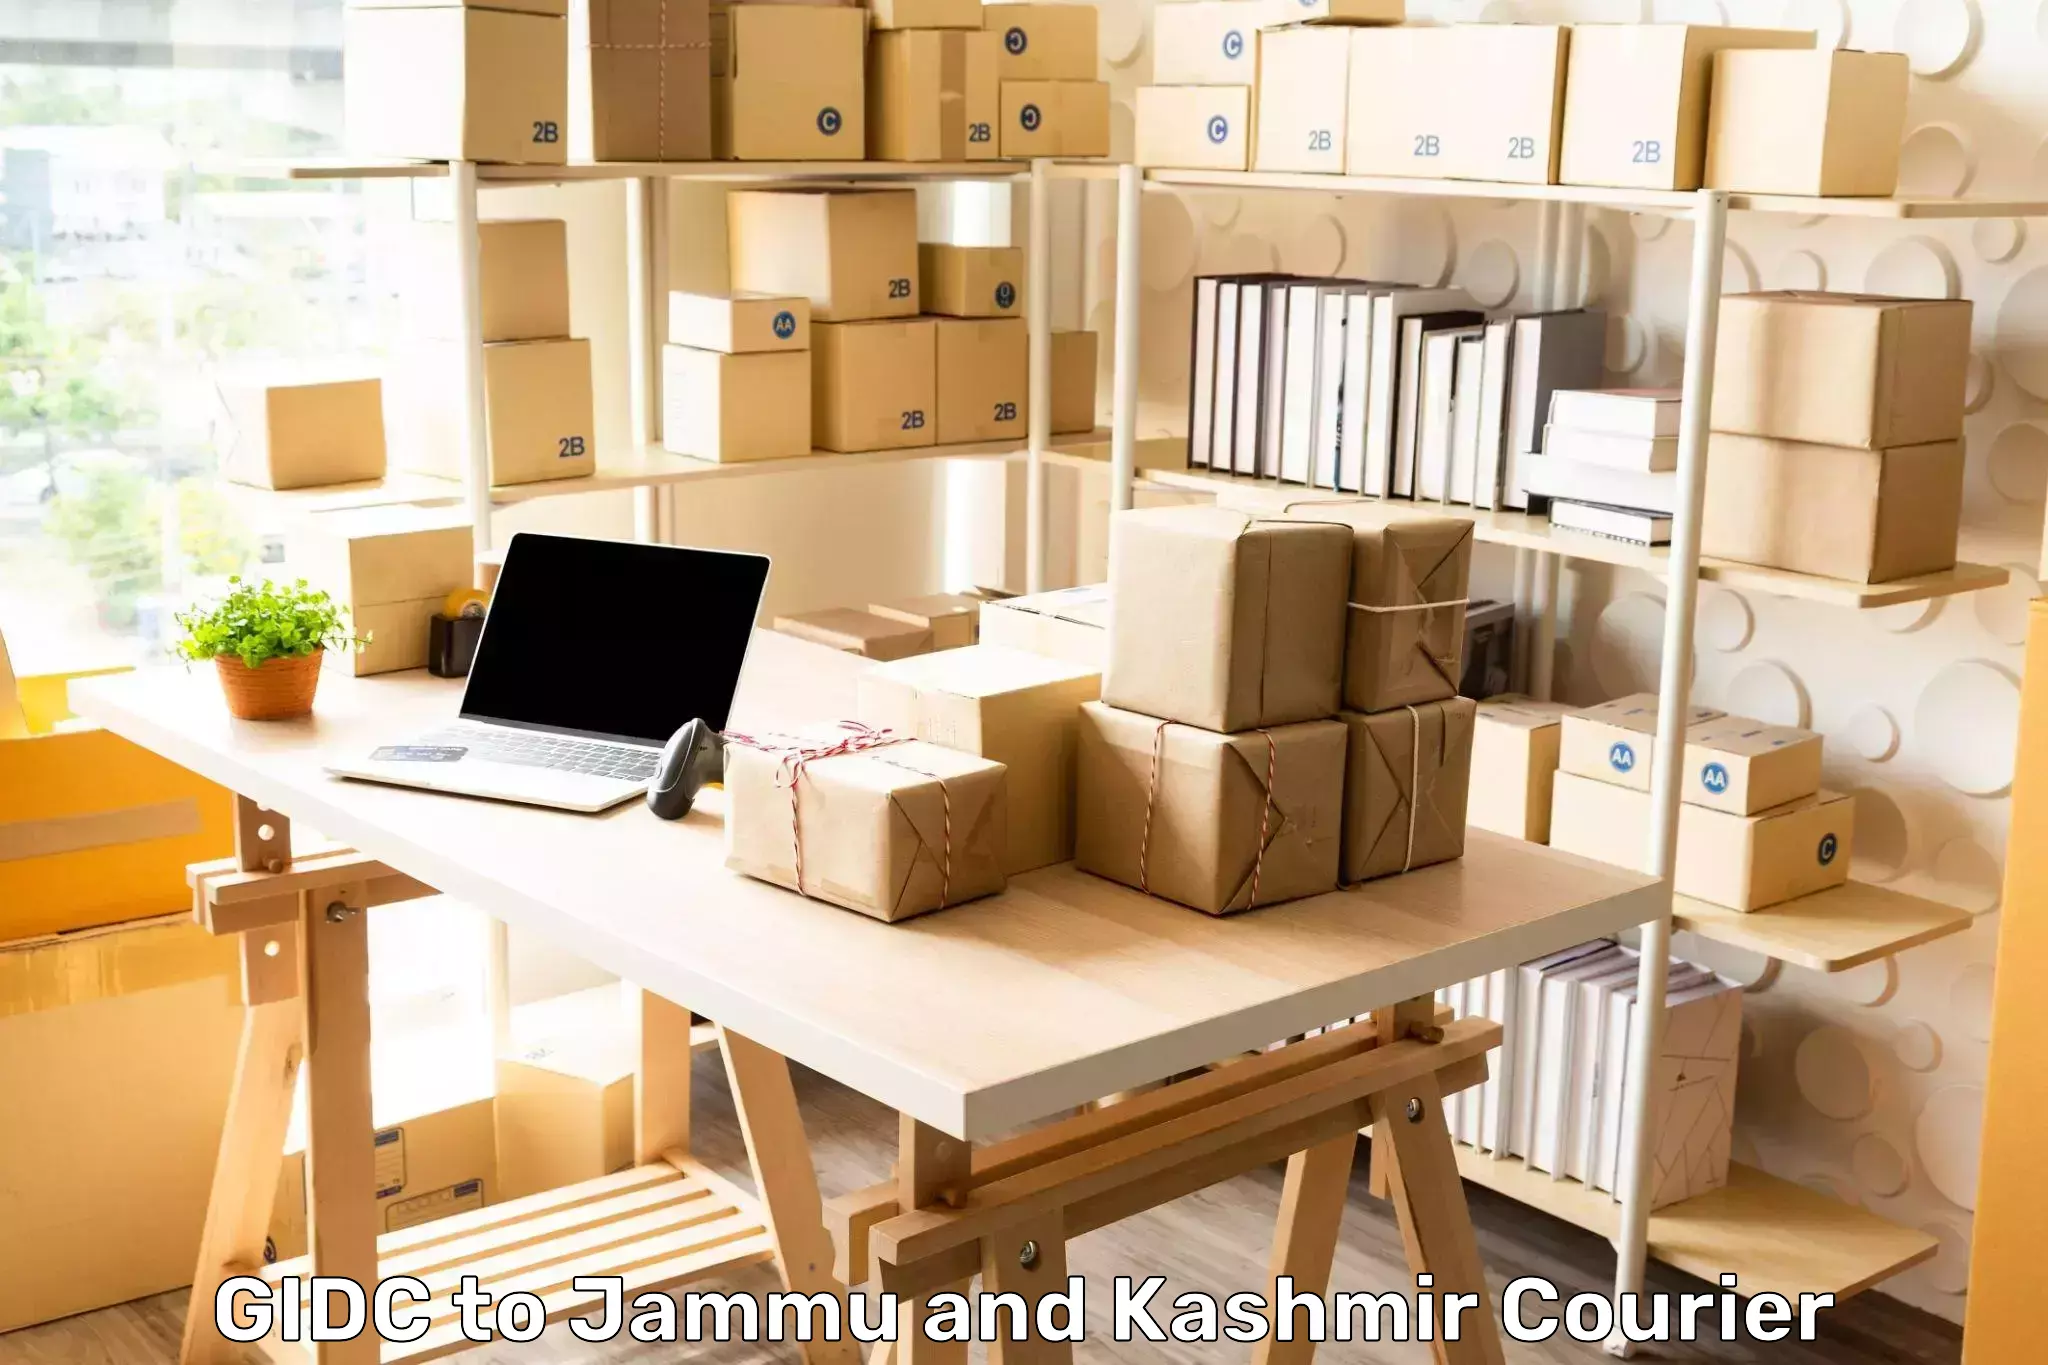 Customer-centric shipping GIDC to Srinagar Kashmir